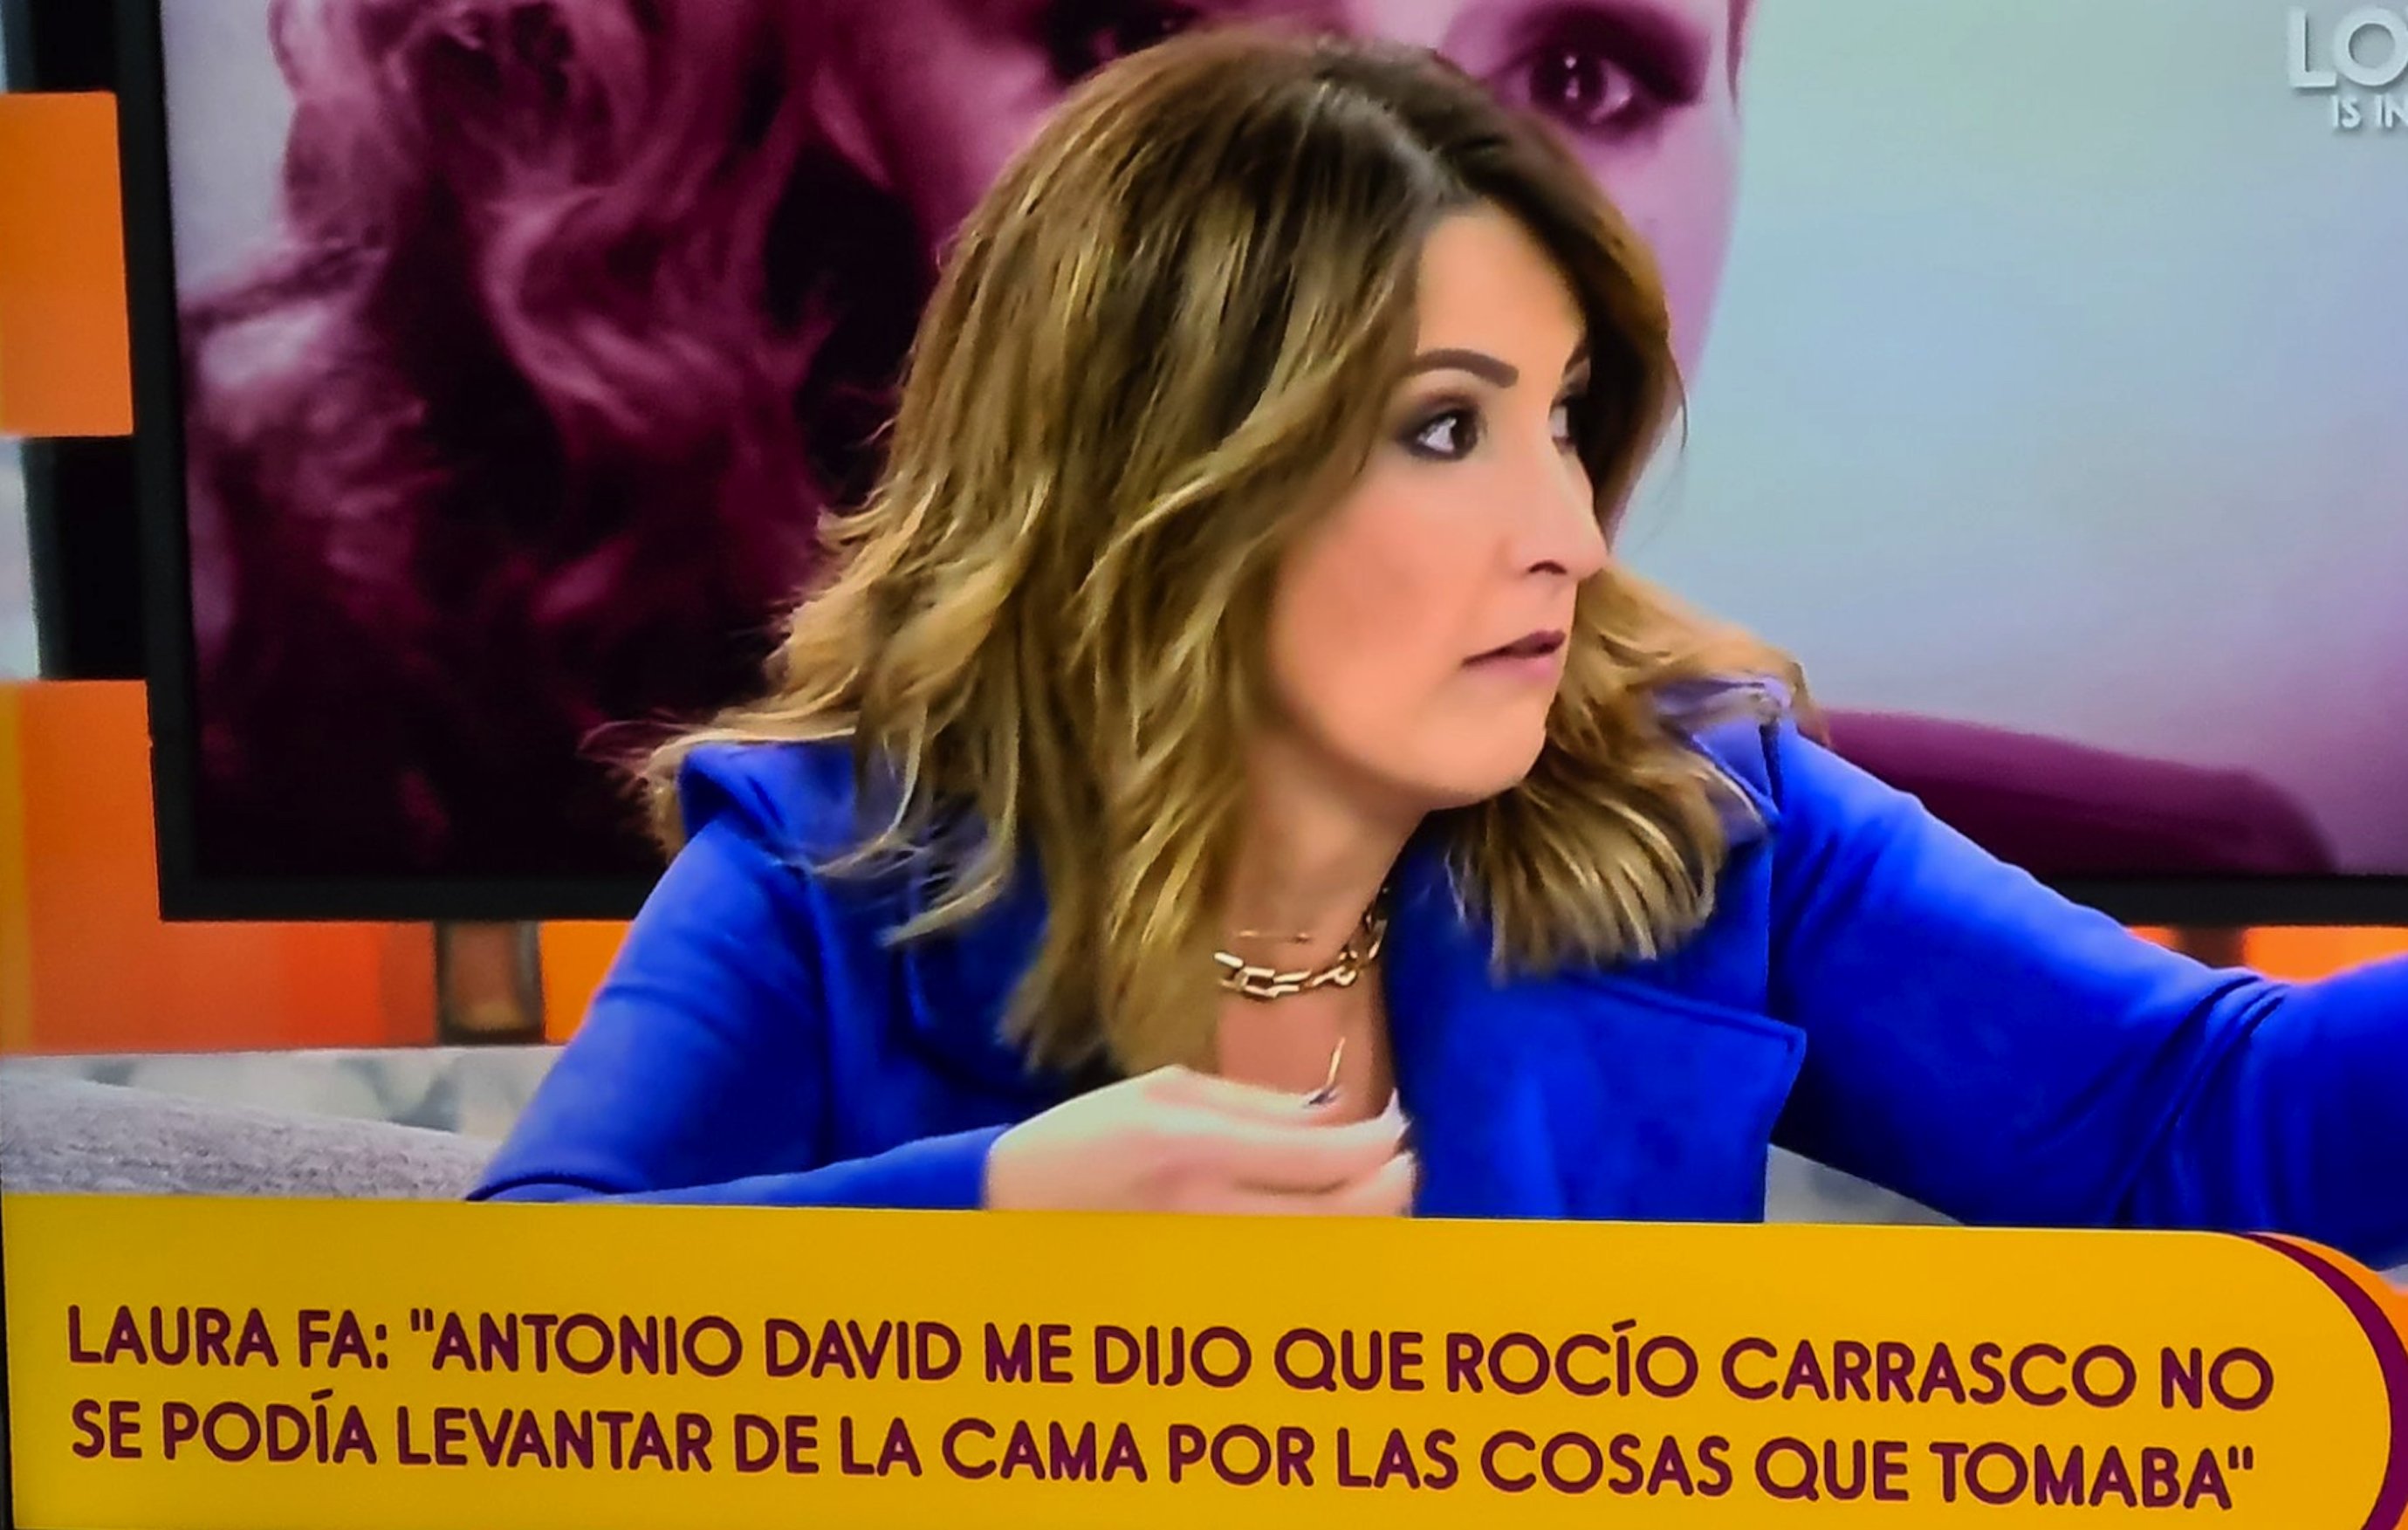 Laura Fa revela la gran mentira de Antonio David sobre Rociíto: "no me amenaces"